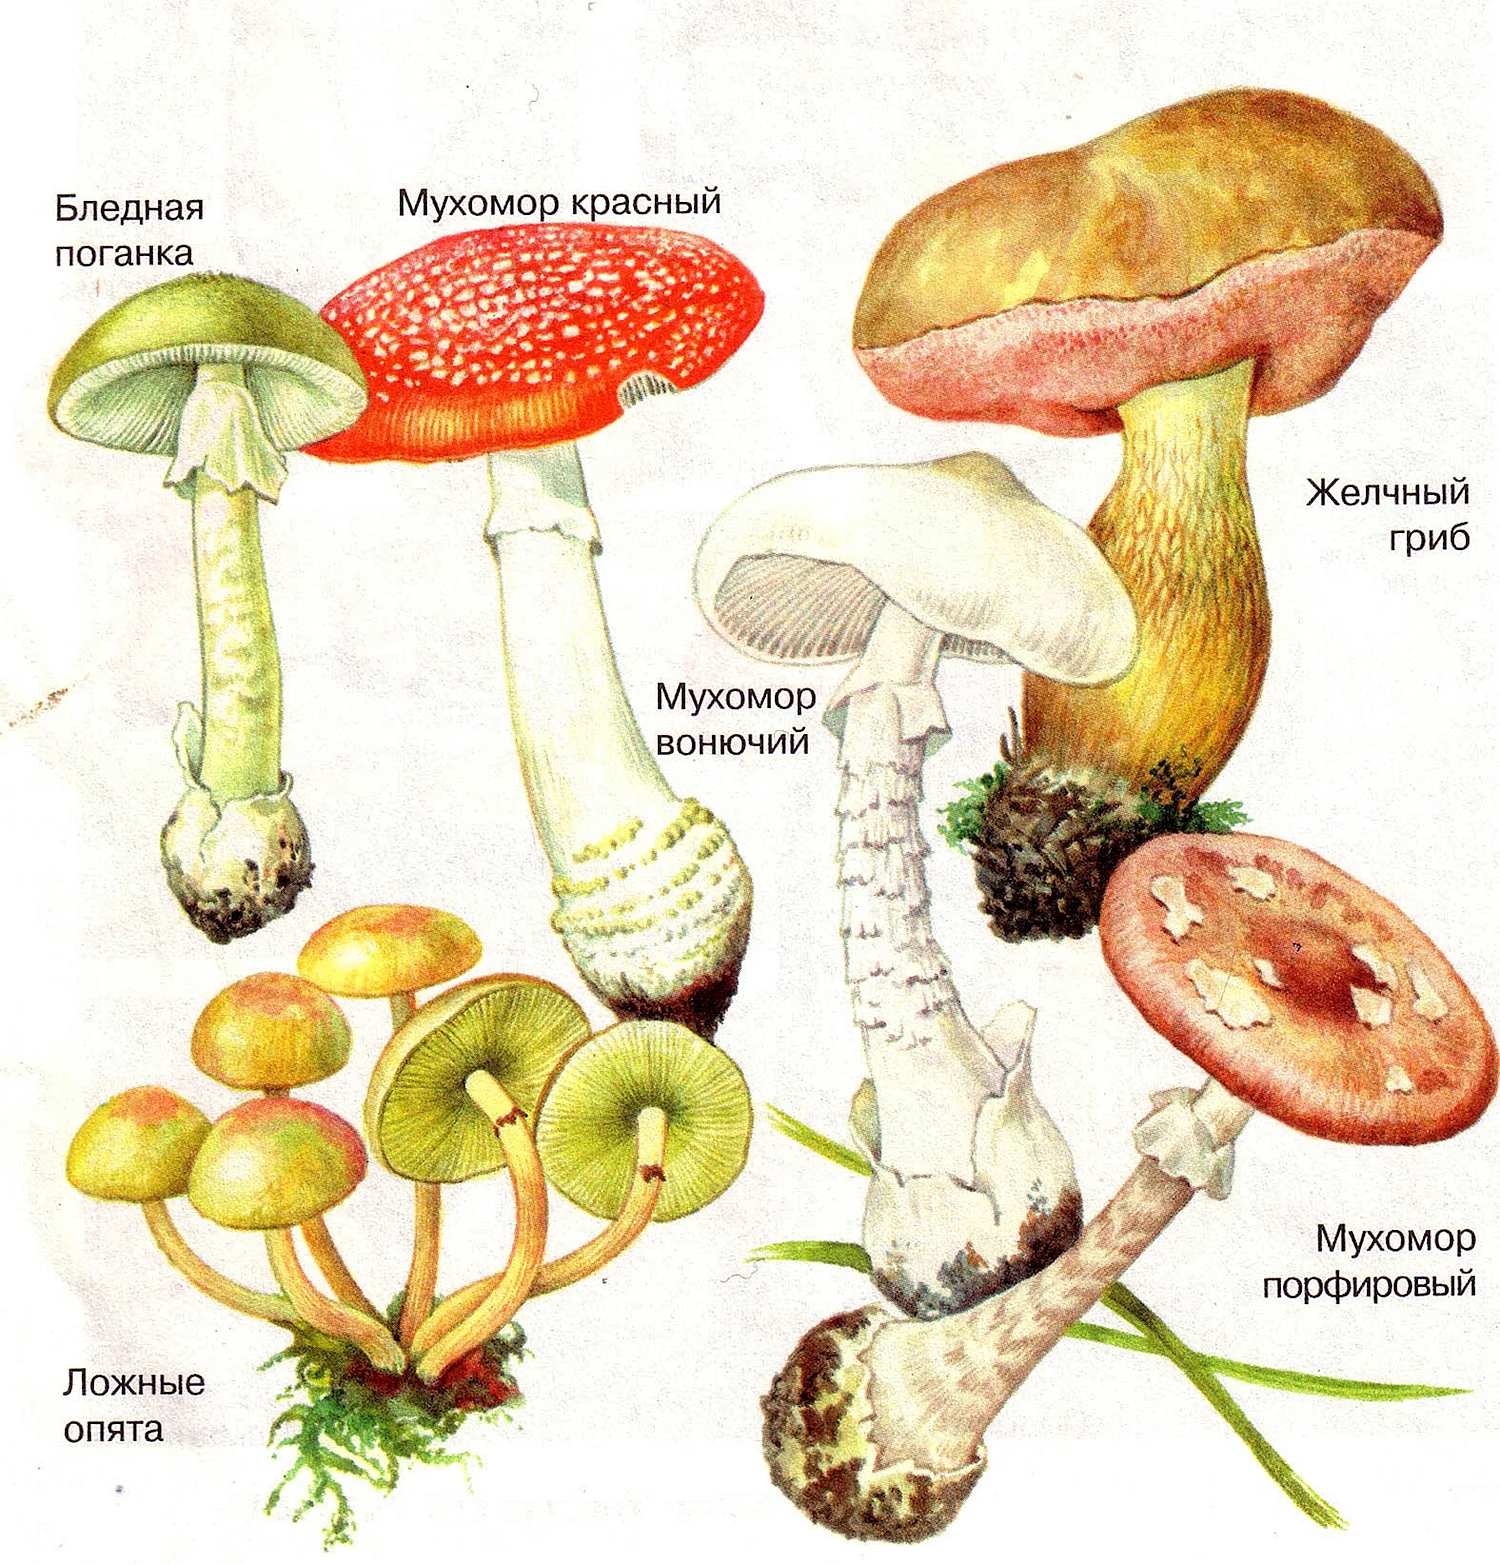 Шляпочные грибы ядовитые грибы